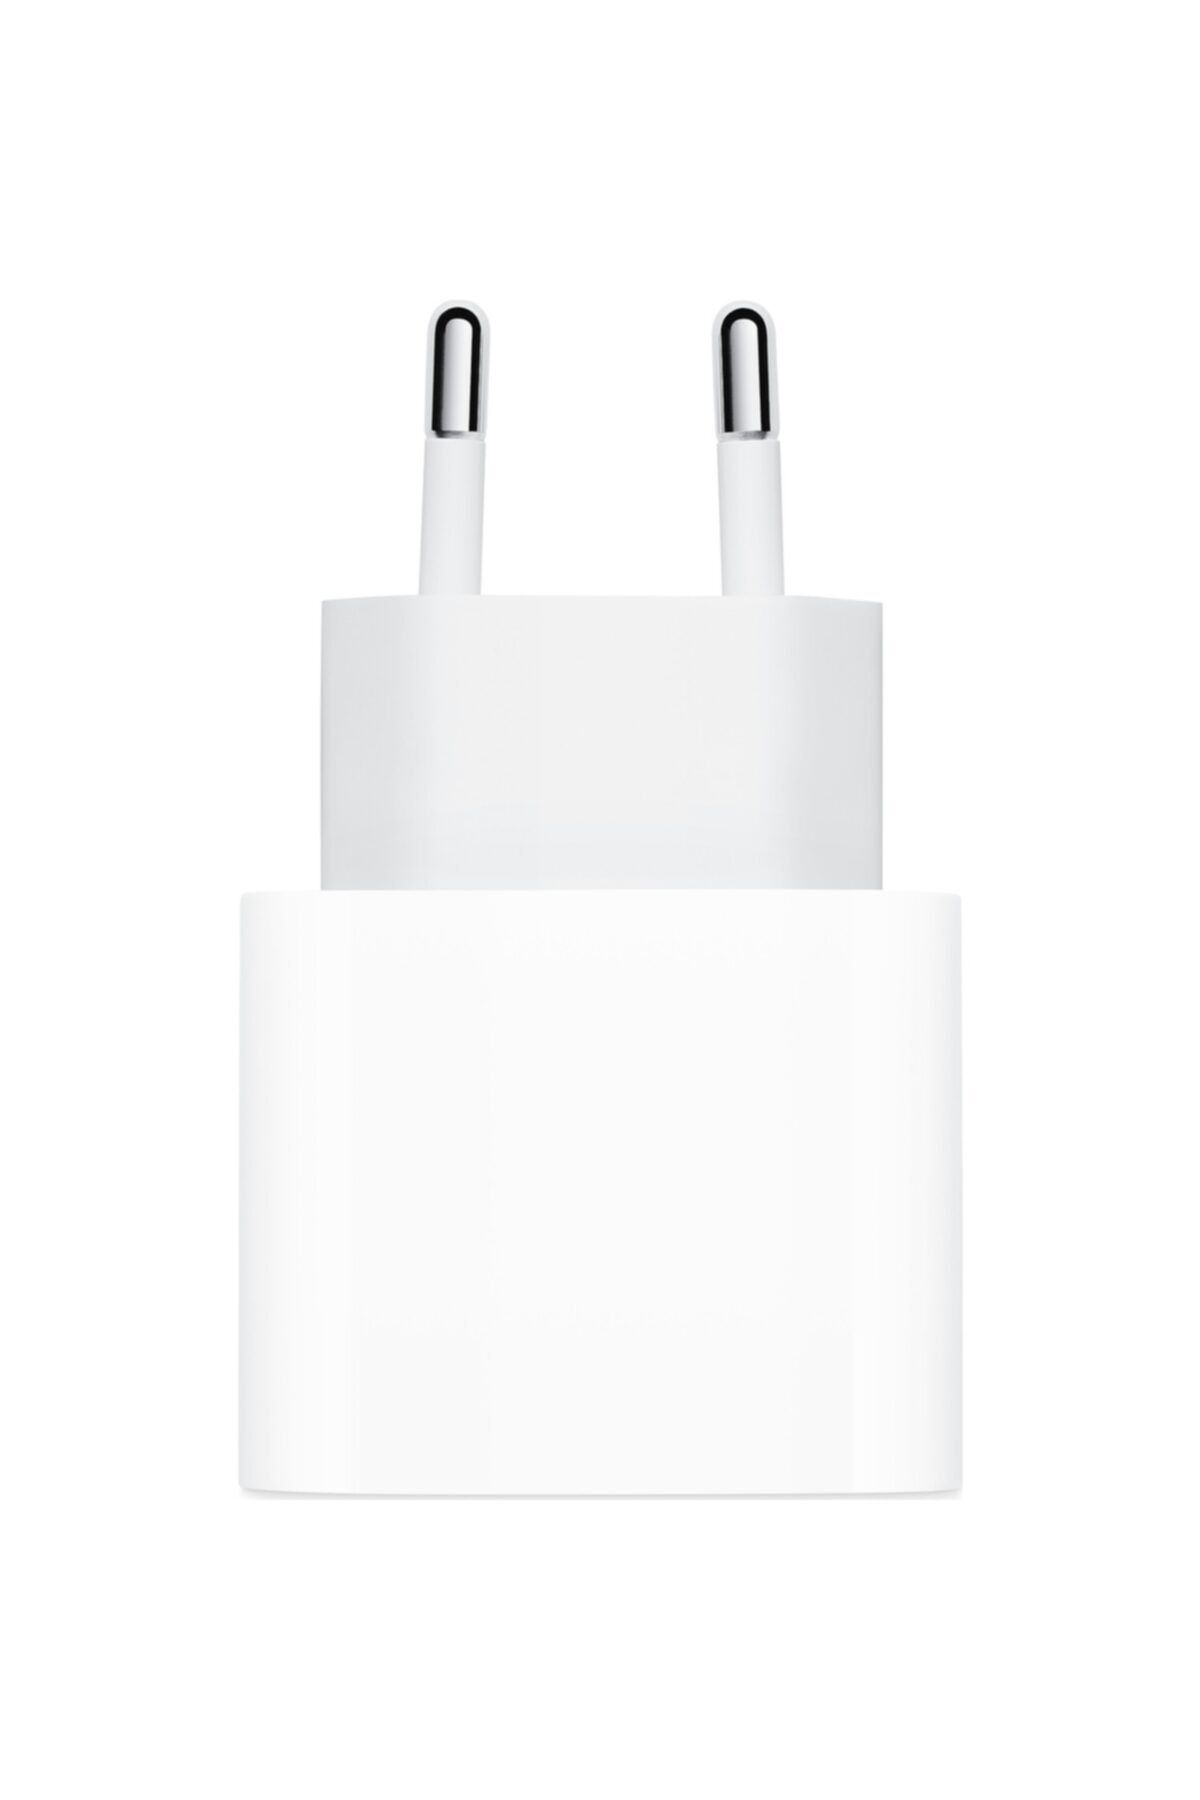 Apple 20 W USB-C Güç Adaptörü (Apple Türkiye Garantili) MHJE3TU/A